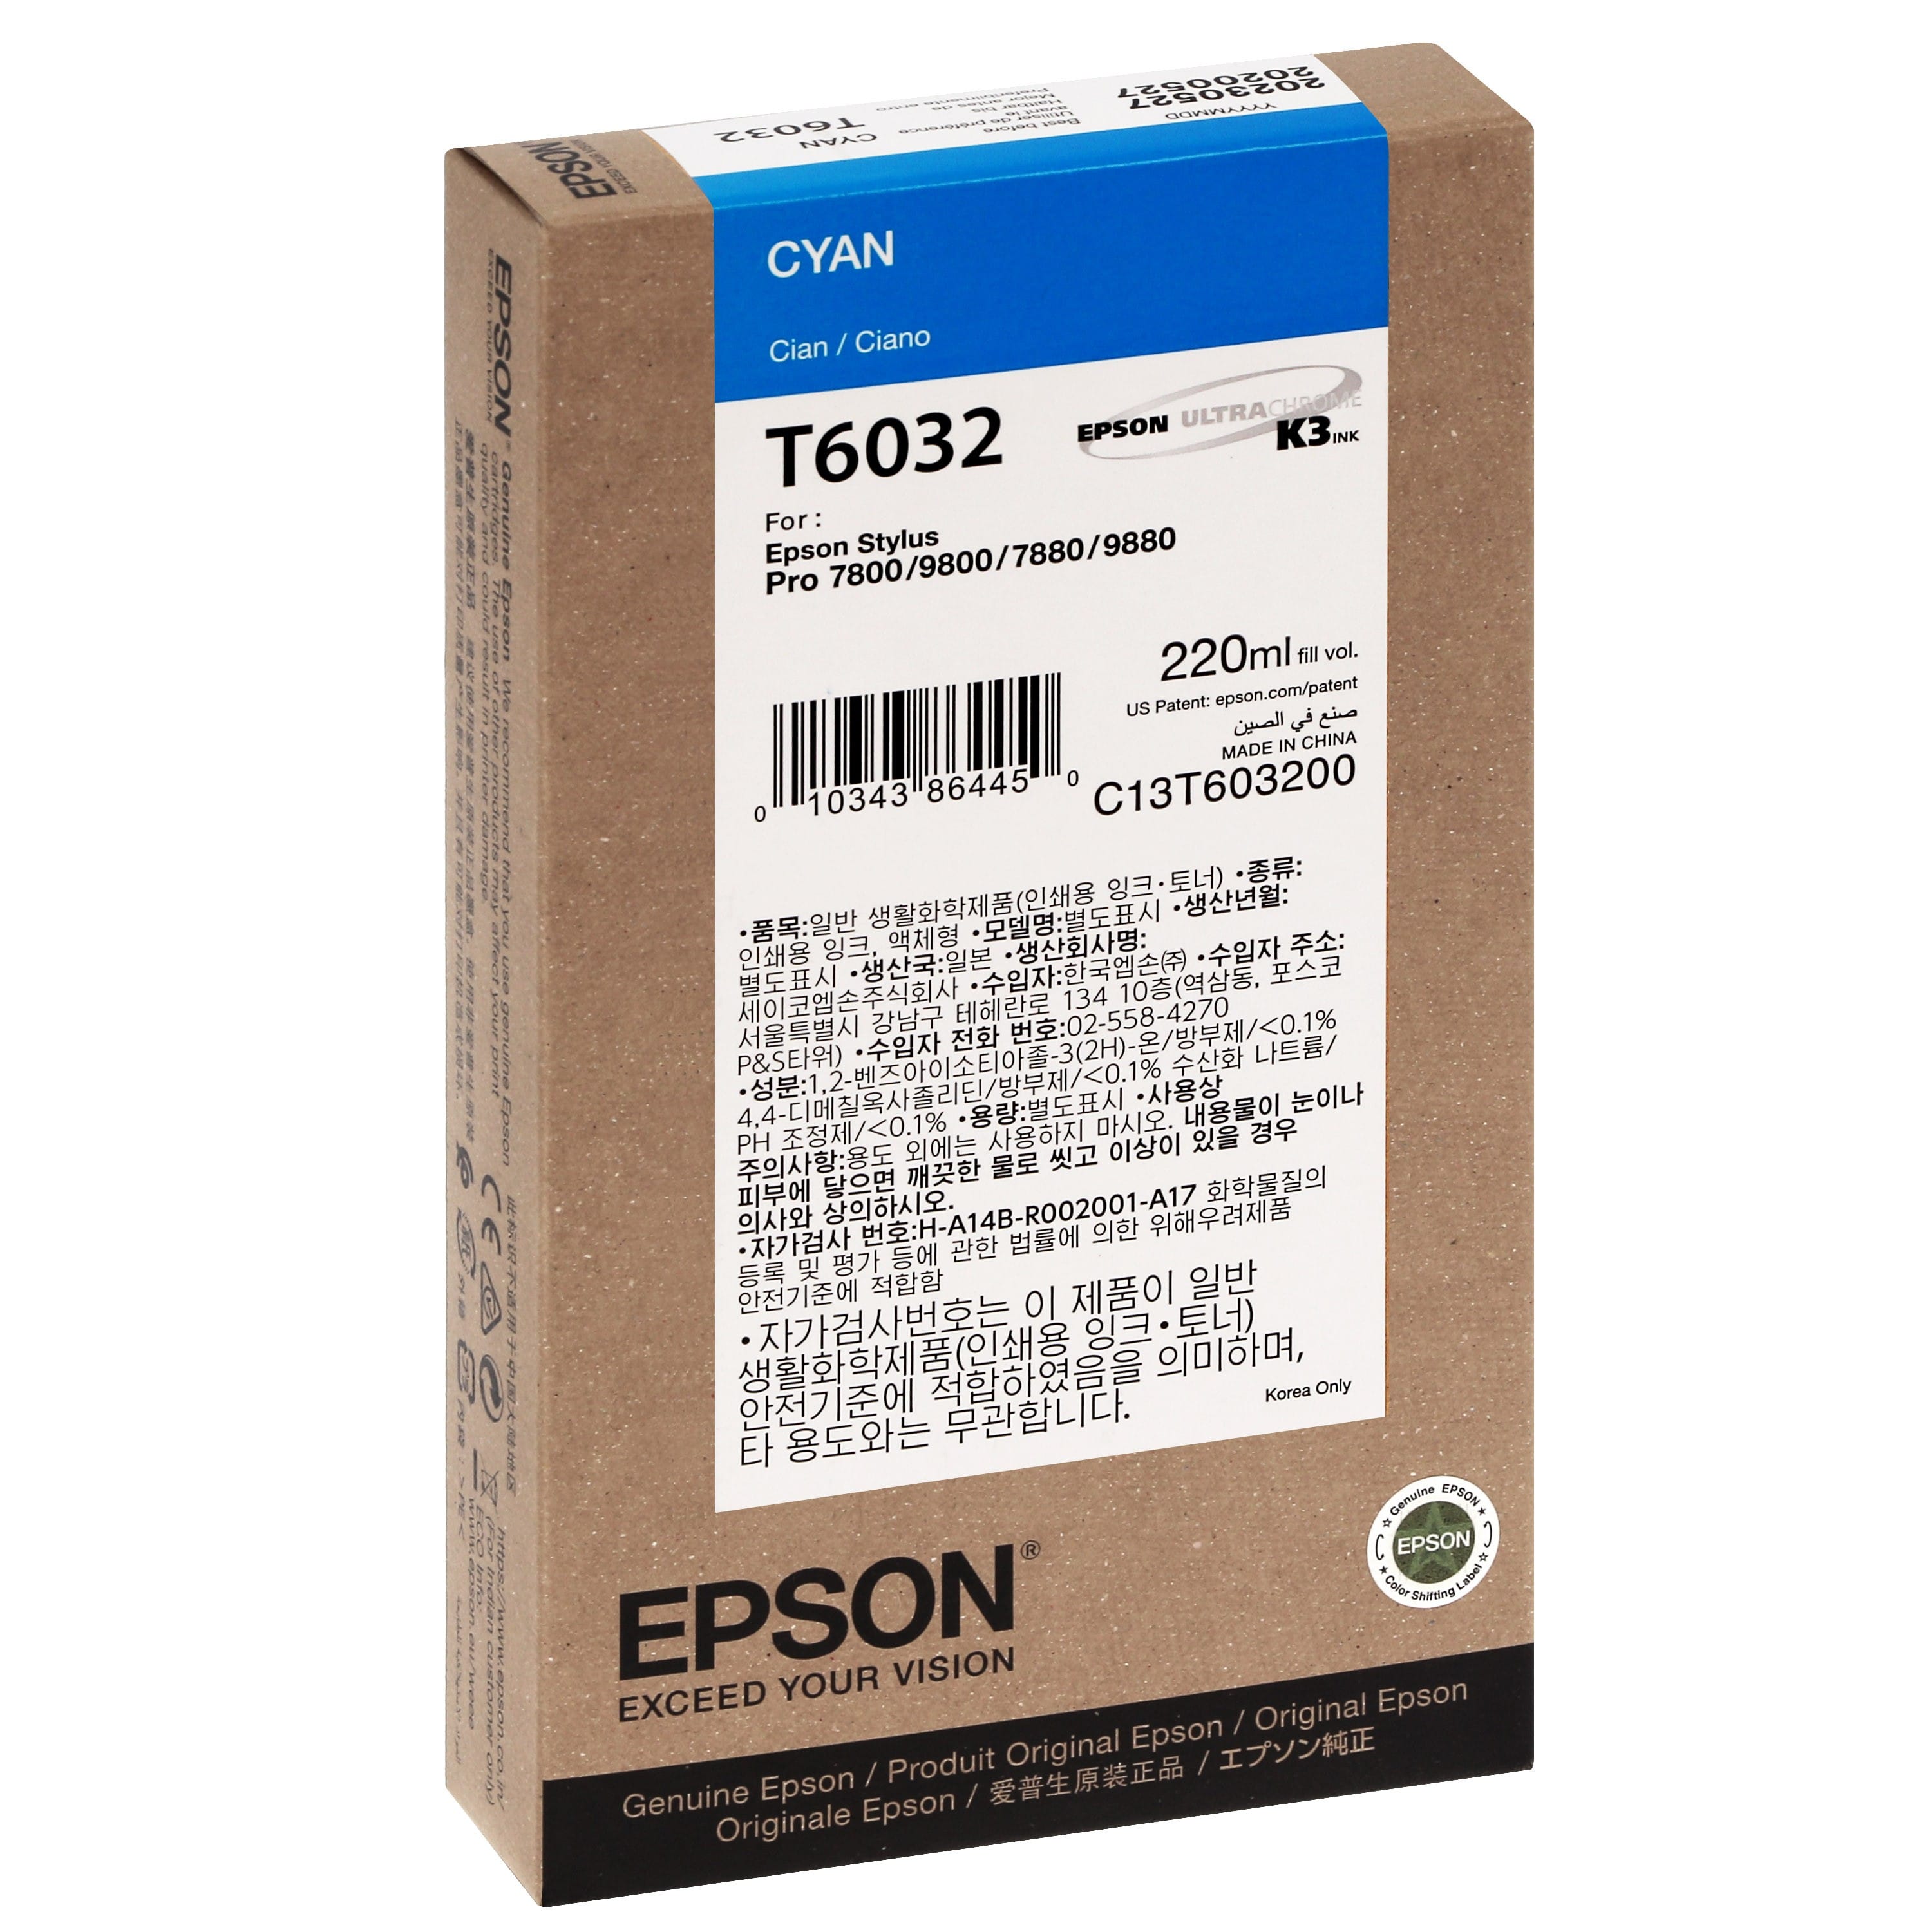 EPSON - Cartouche d'encre traceur T6032 Pour imprimante 7800/7880/9800/9880 Cyan - 220ml